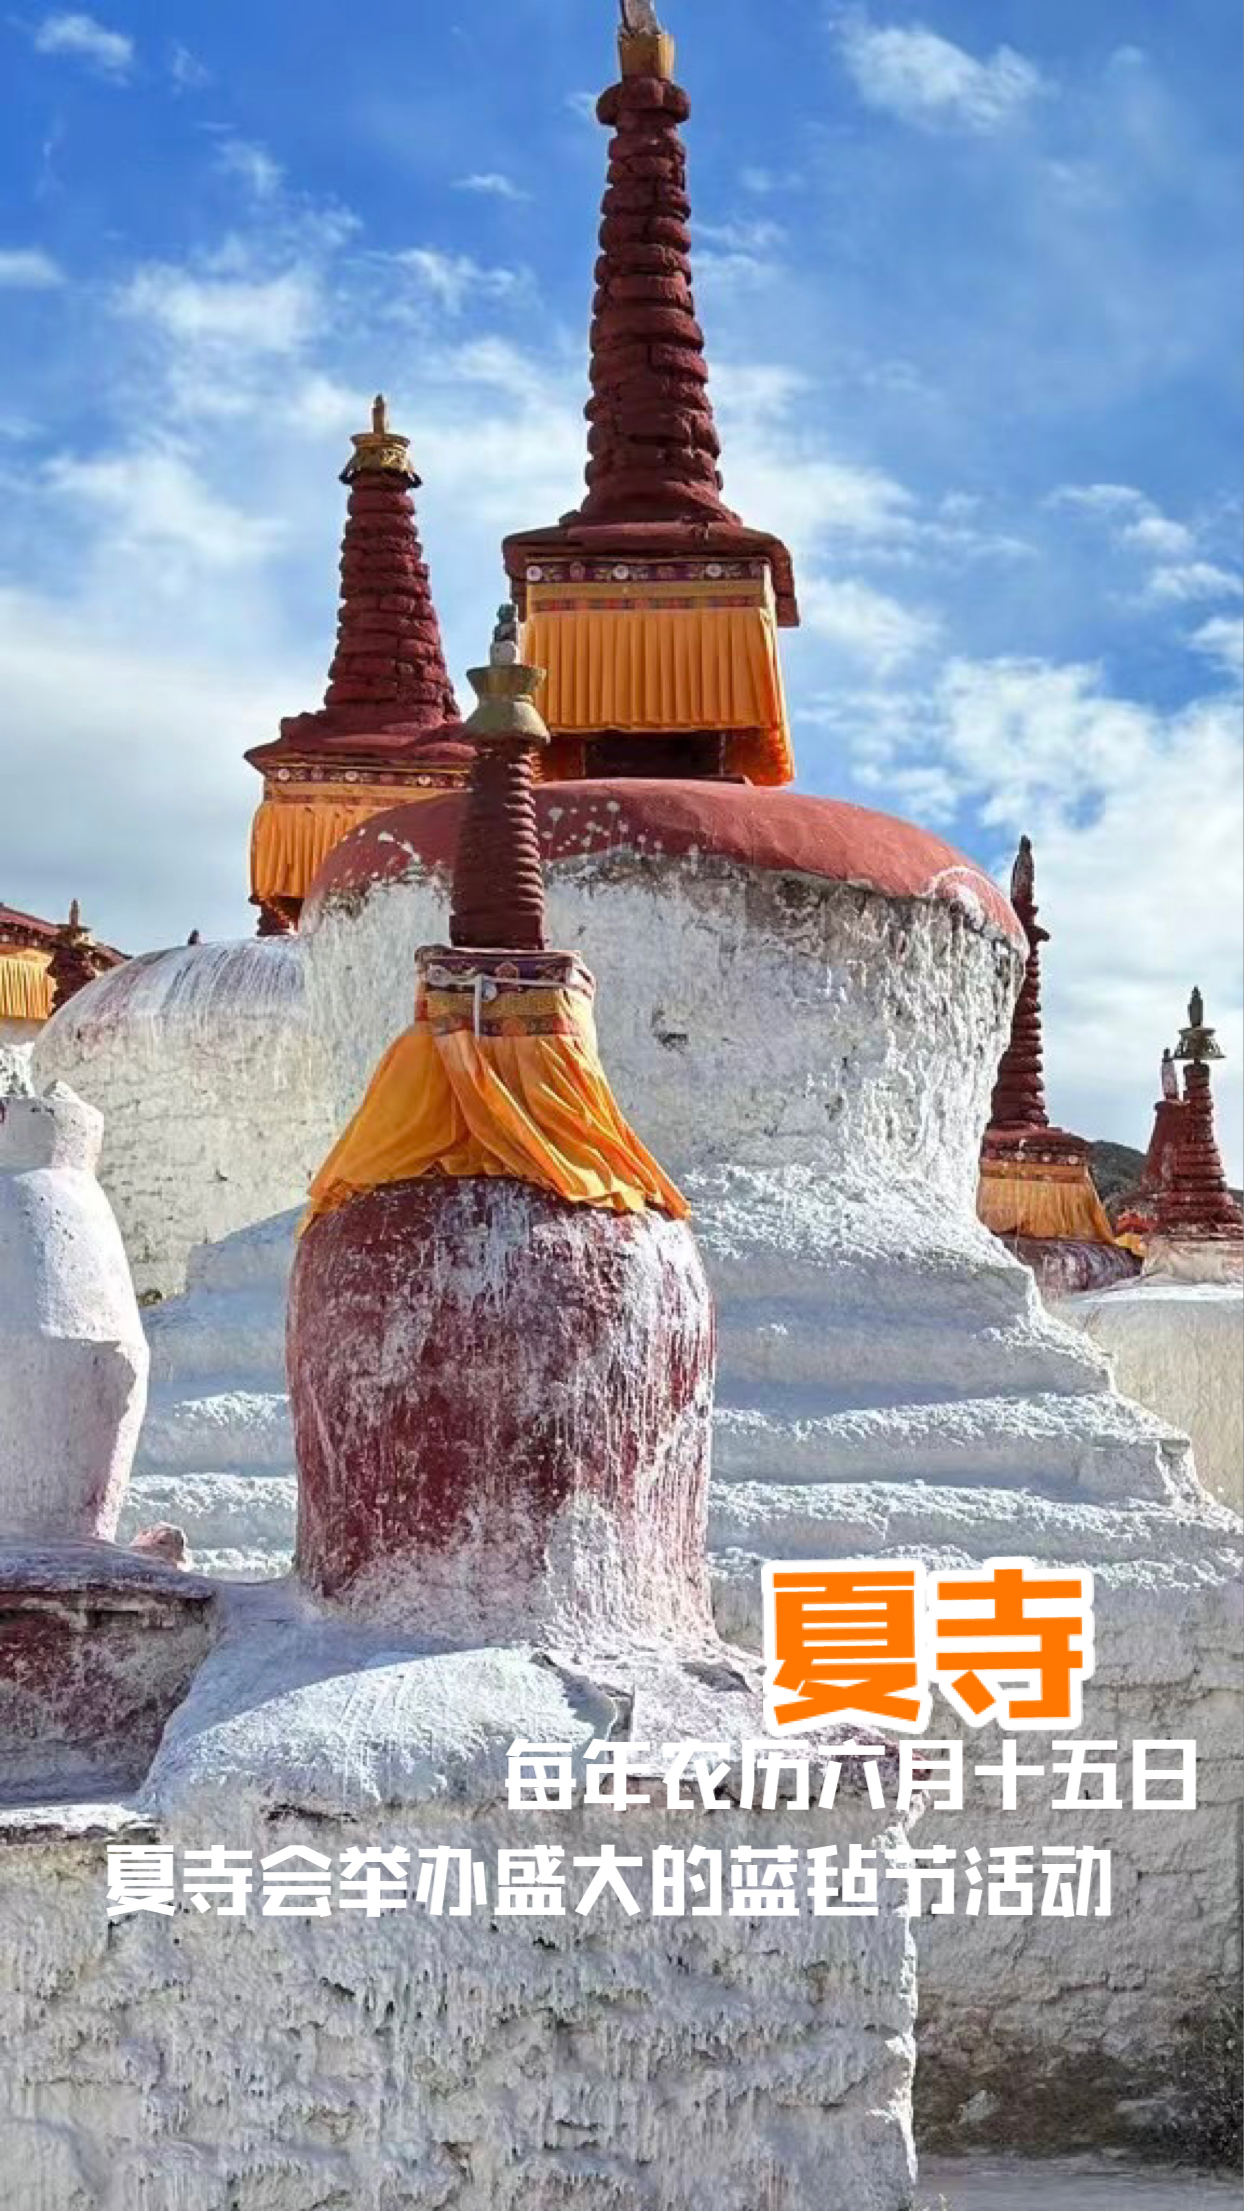 西藏自治区拉萨市林周县 • 夏寺 700年的历史